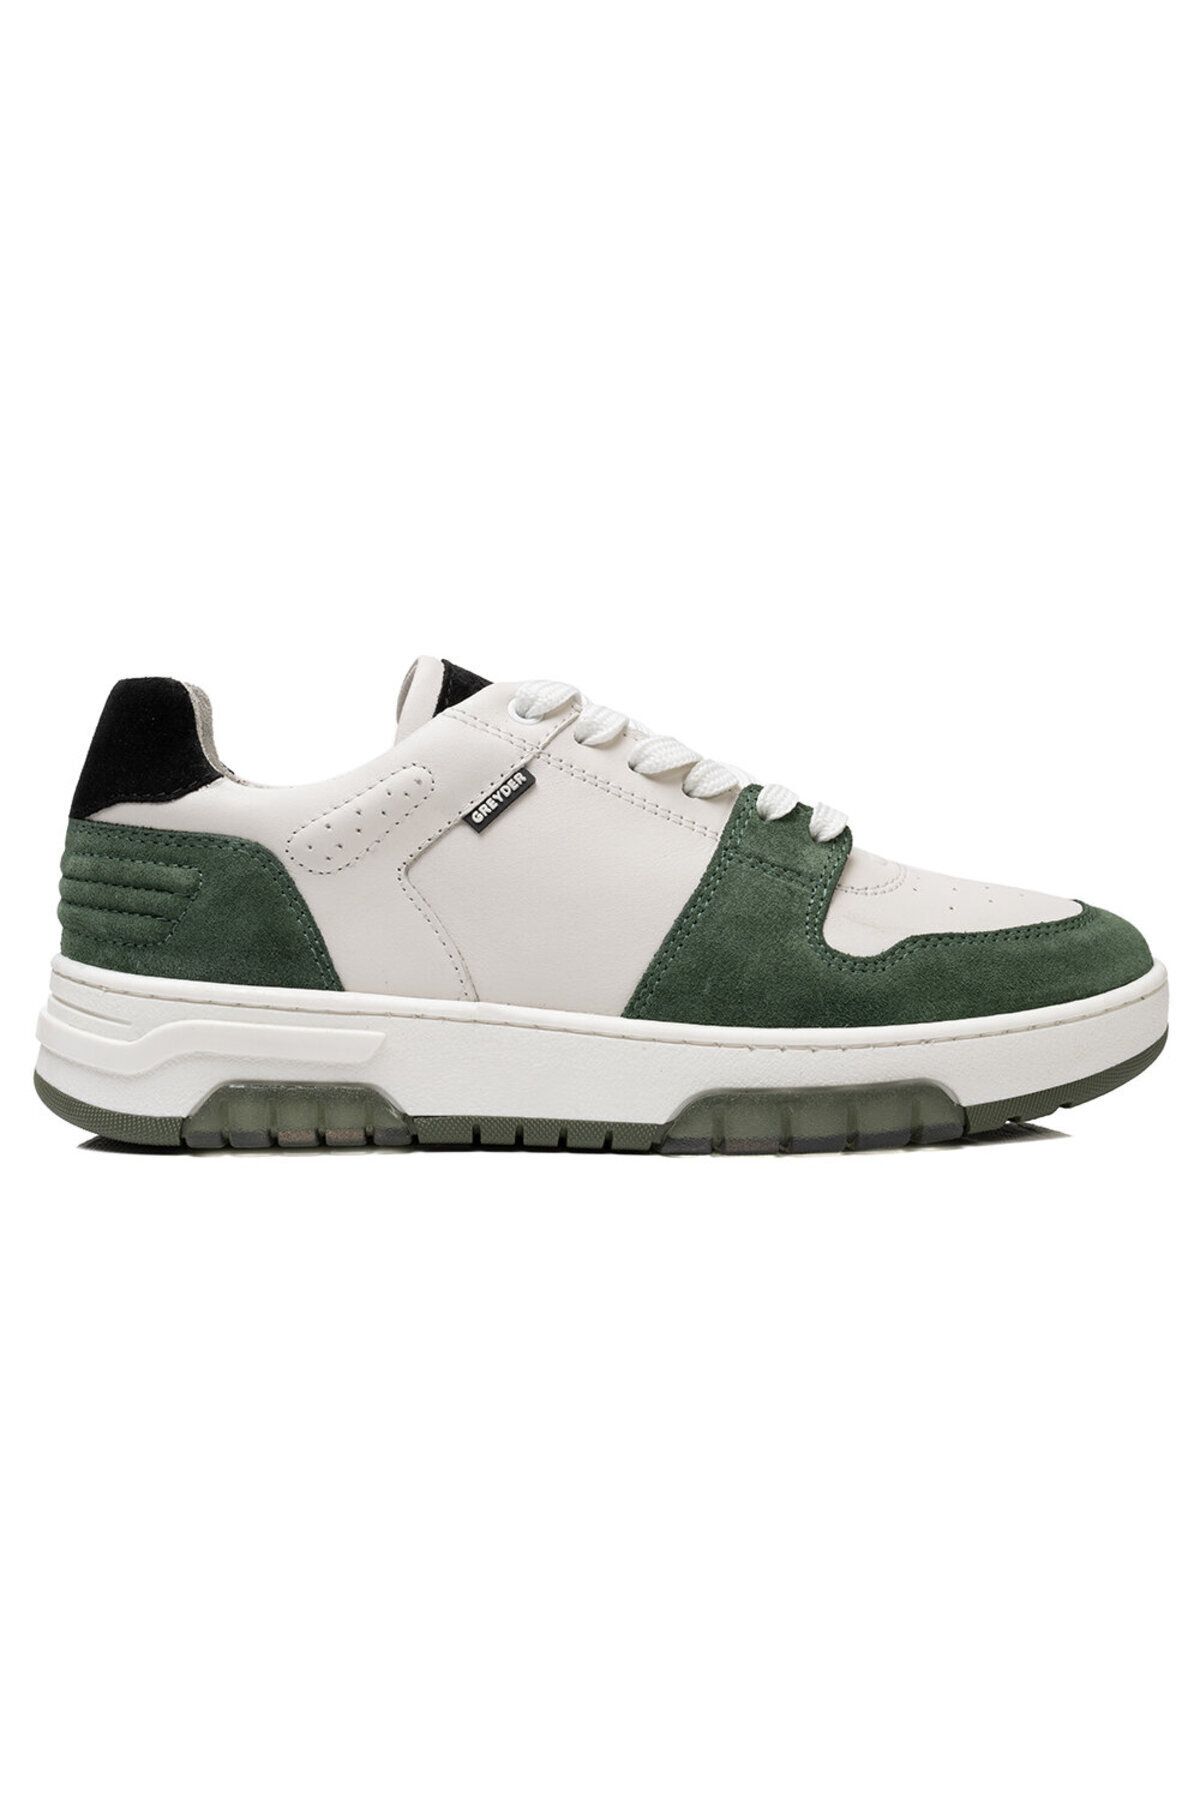 Greyder Kadın Beyaz Yeşil Hakiki Deri Sneaker Ayakkabı 3k2sa33021